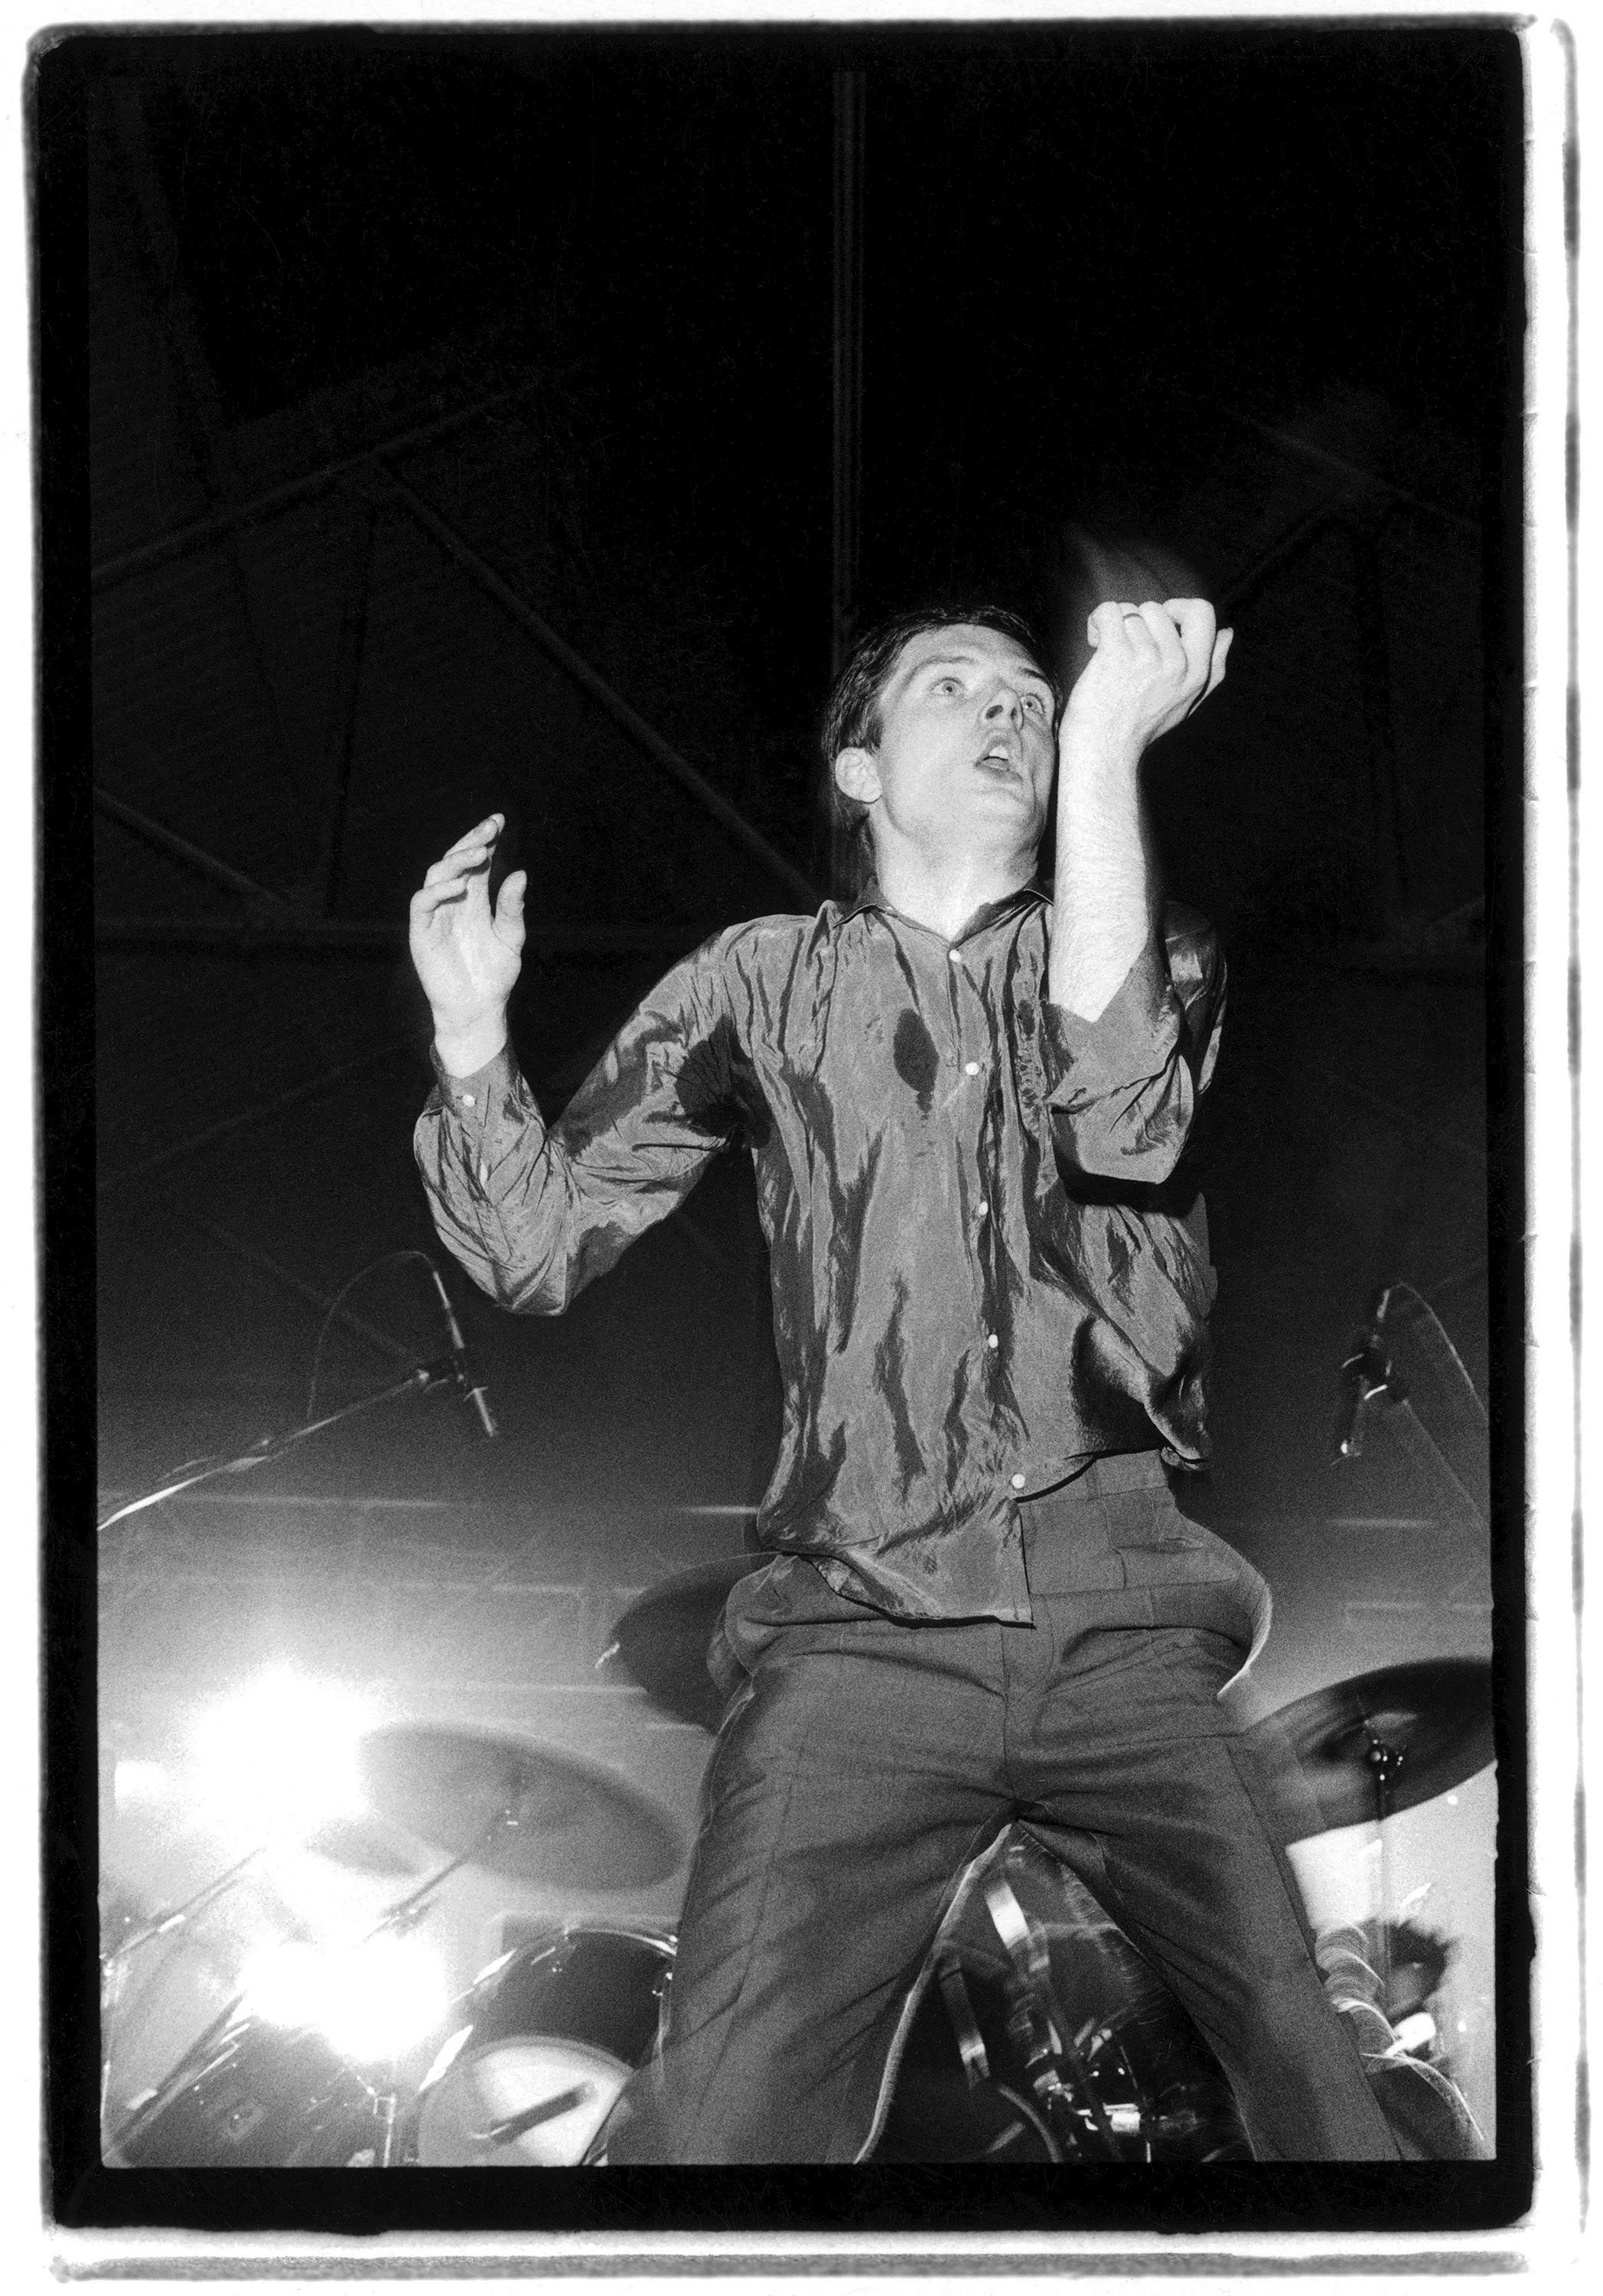 Signierter Silbergelatine-Druck in limitierter Auflage des britischen Sängers Ian Curtis, der mit Joy Division beim Futurama One Festival in der Queen's Hall in Leeds am 8. September 1979 auftrat. Die Veranstaltung wurde als "Das erste